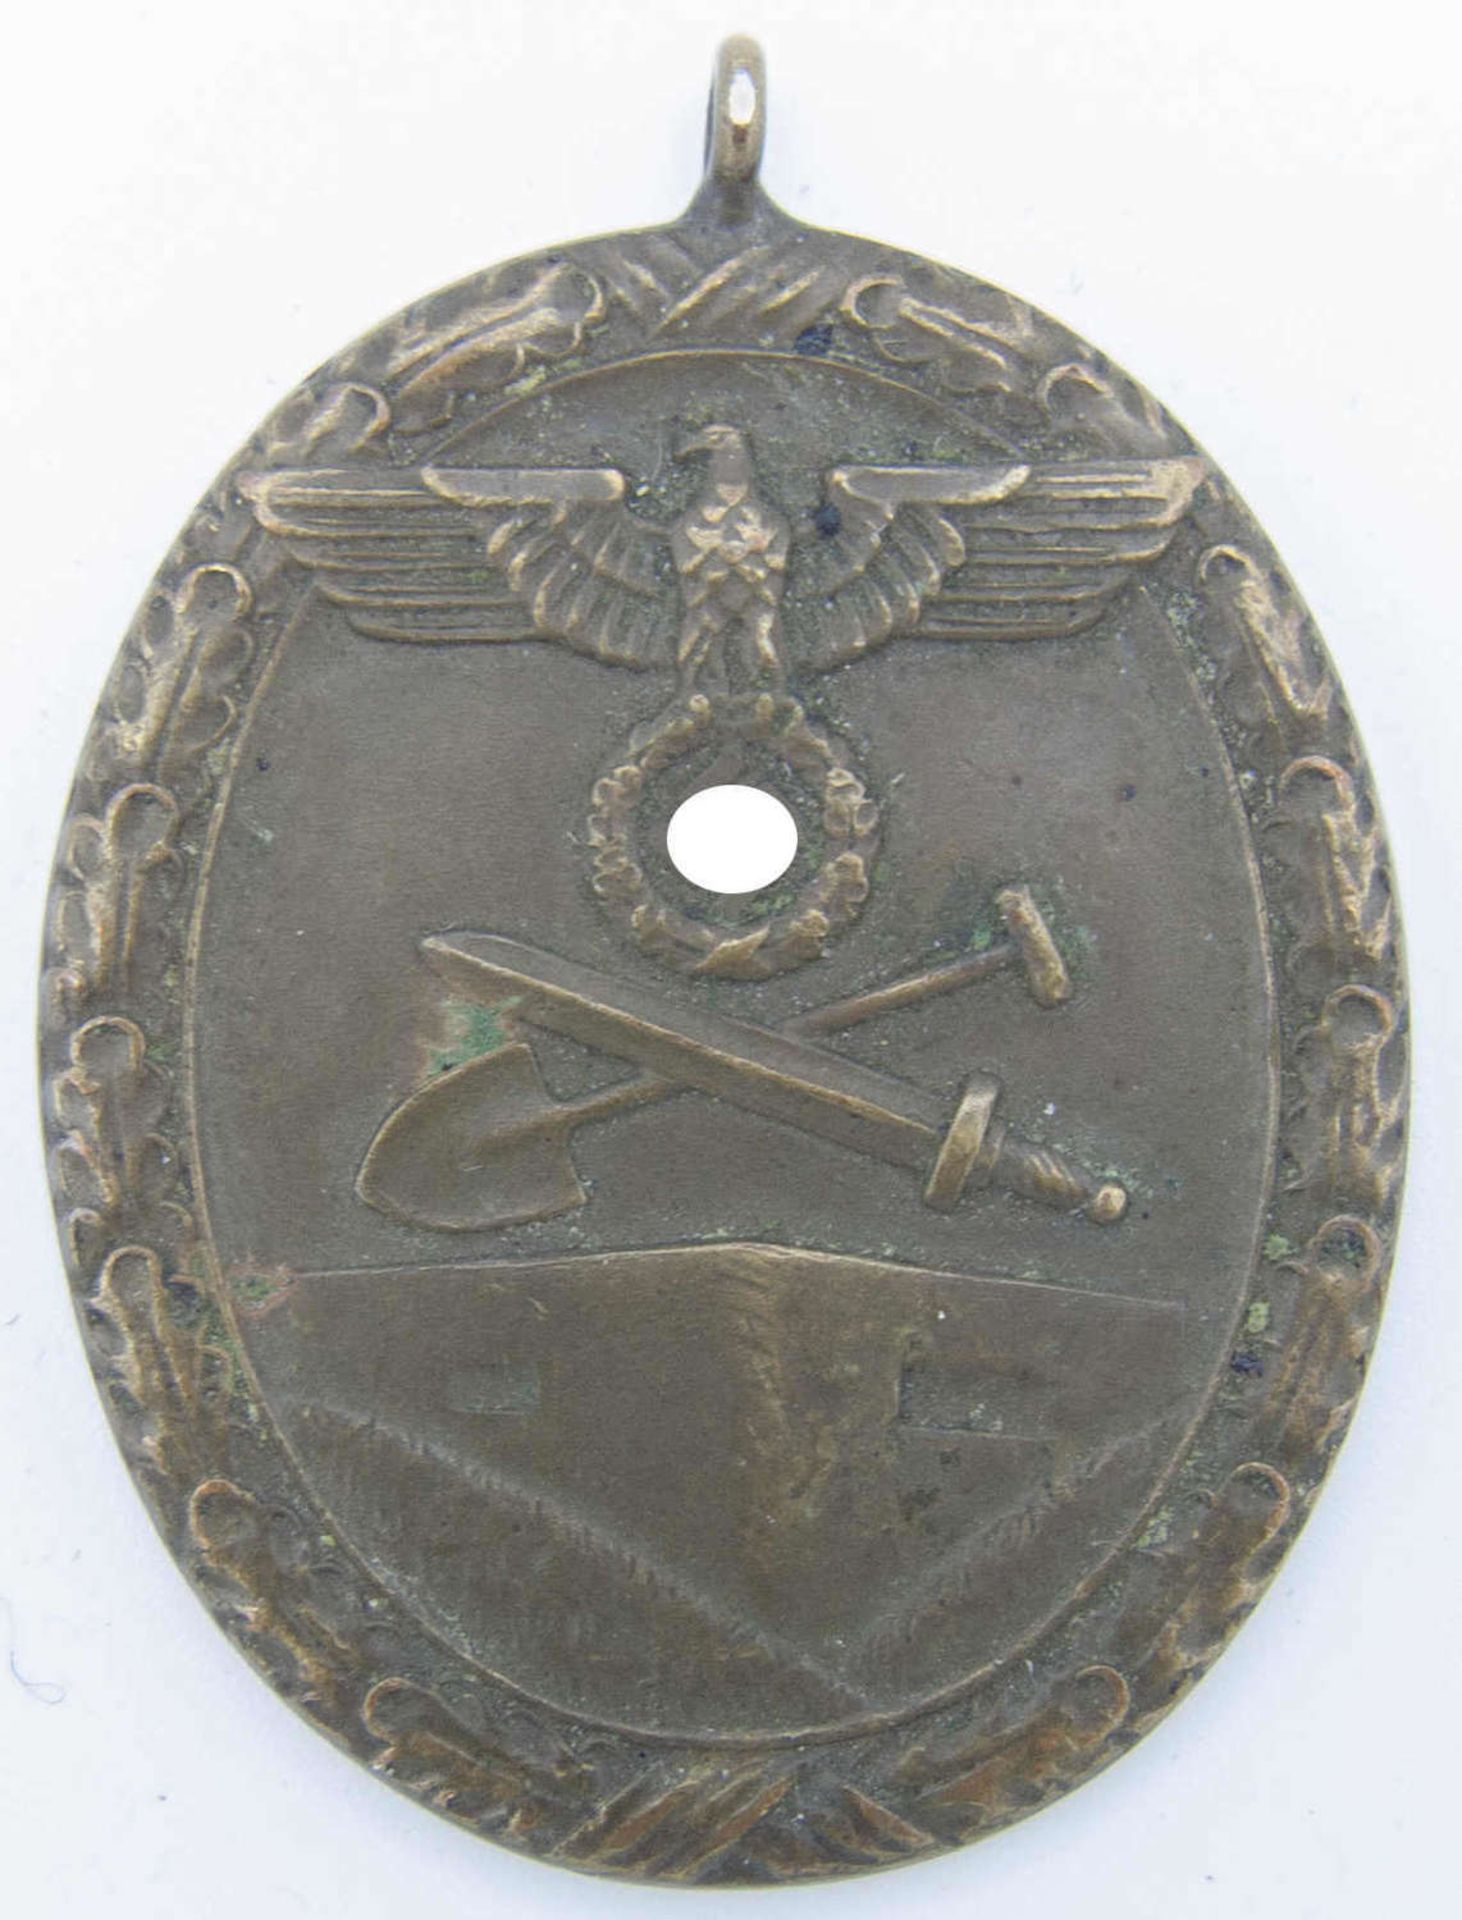 2. Weltkrieg, SchutzwallabzeichenWorld War II, protective wall badge